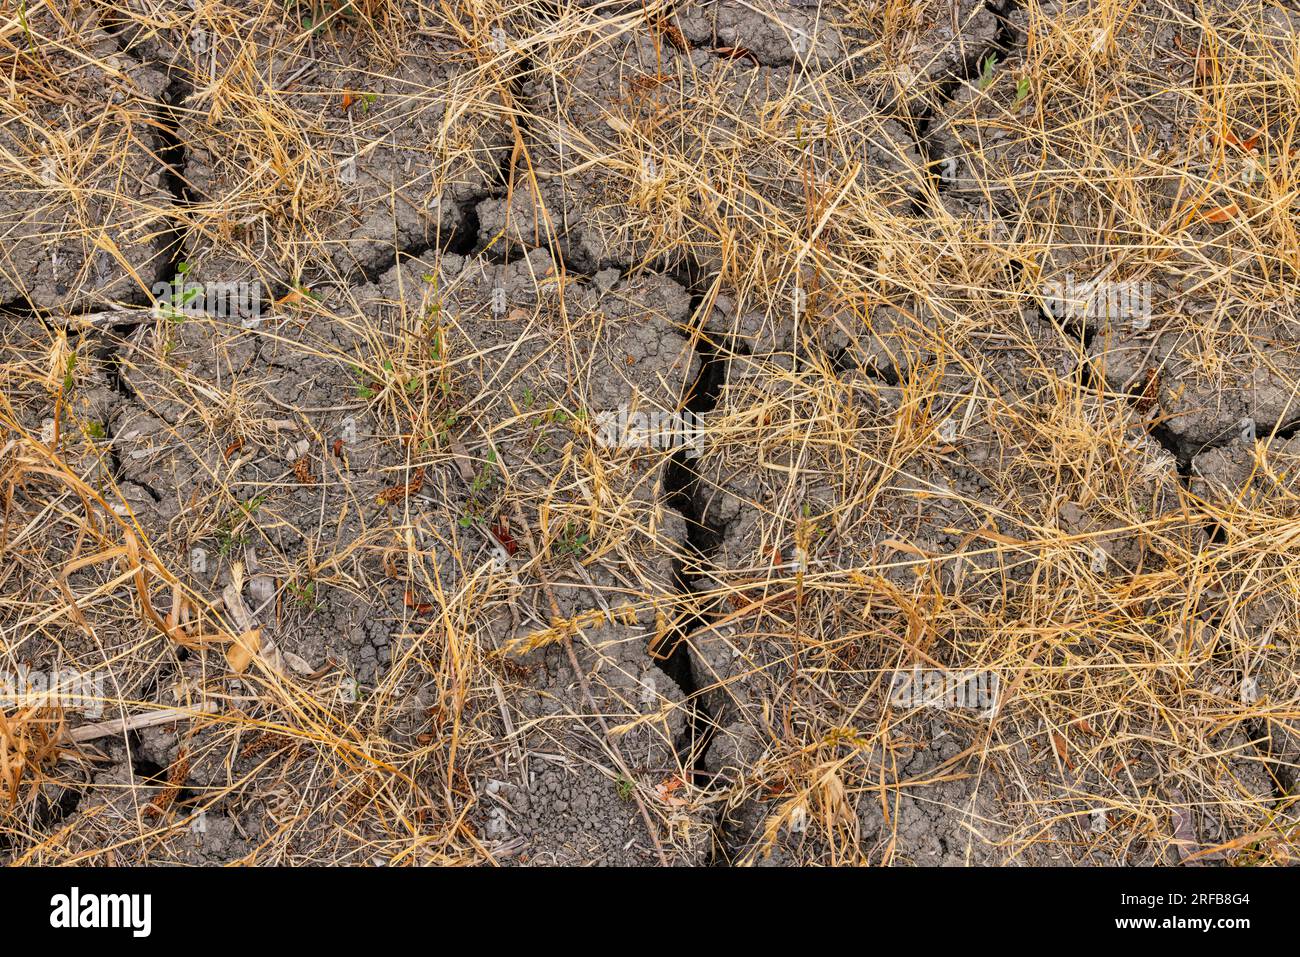 Erba e piante appassite con crepe nel suolo a causa della siccità nei cambiamenti climatici, nel sud della Germania Foto Stock